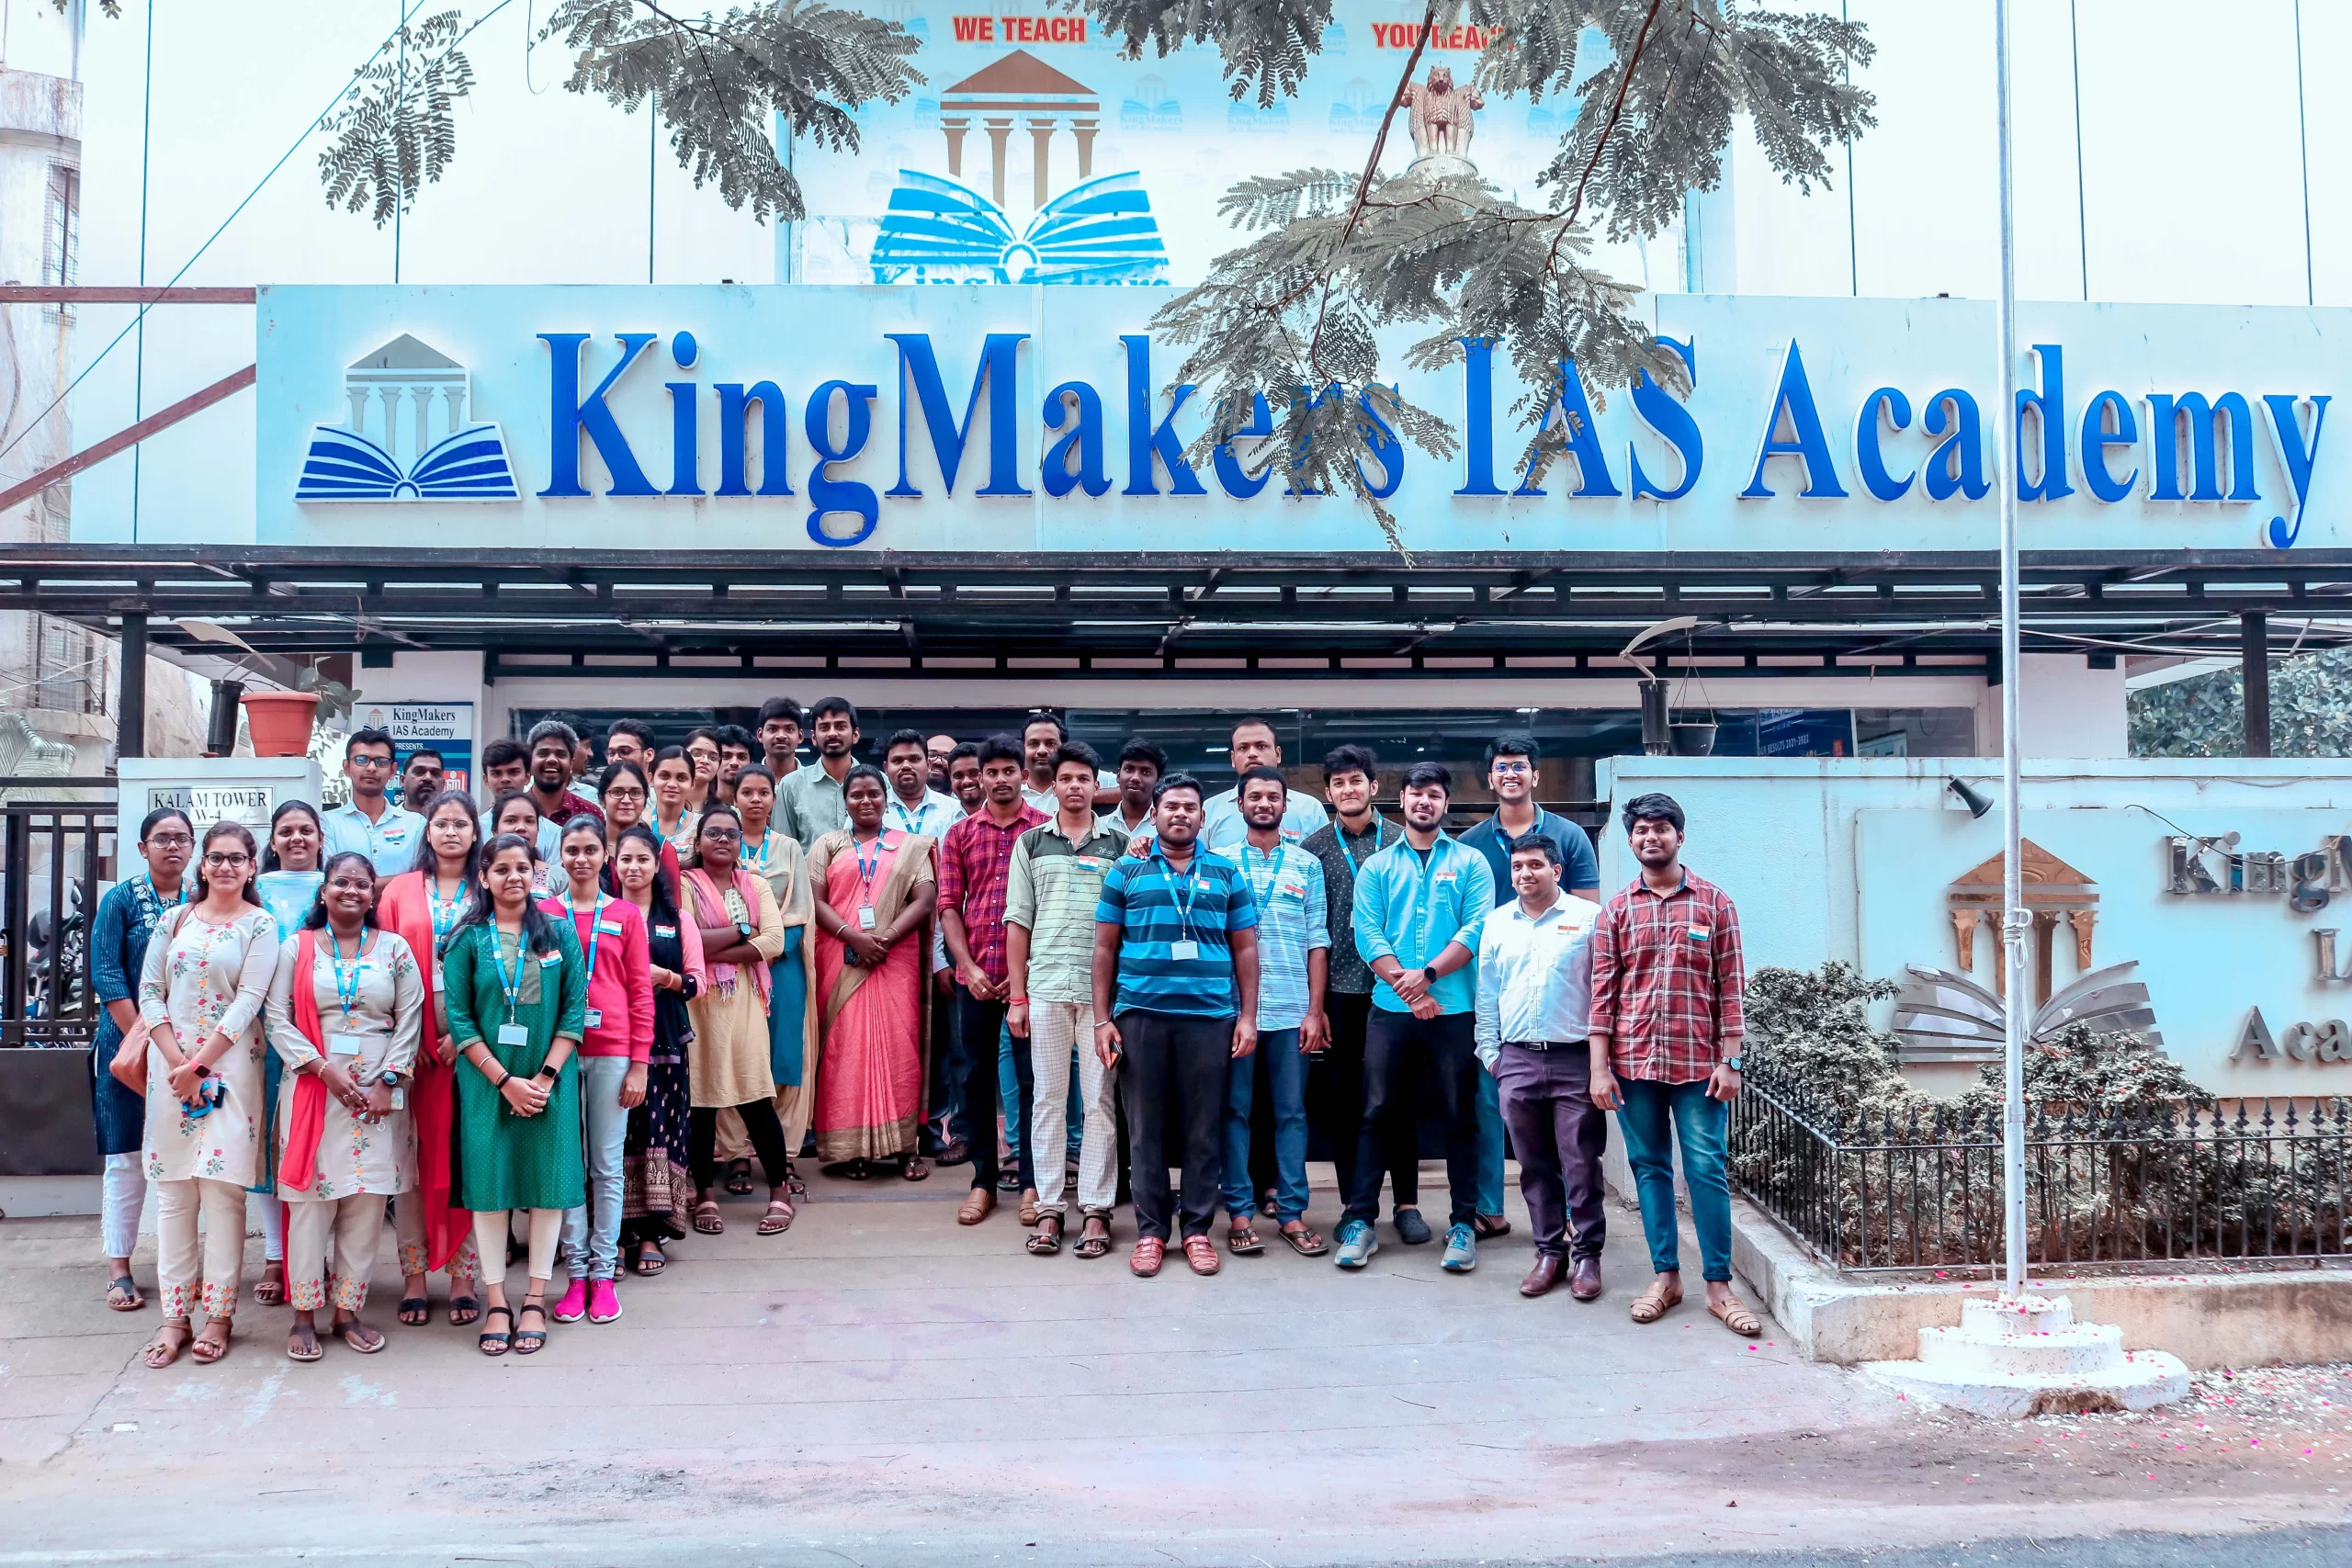 Kingmakers IAS Academy  UPSC Exams institute in Chennai Anna Nagar, Chennai, India - 600040